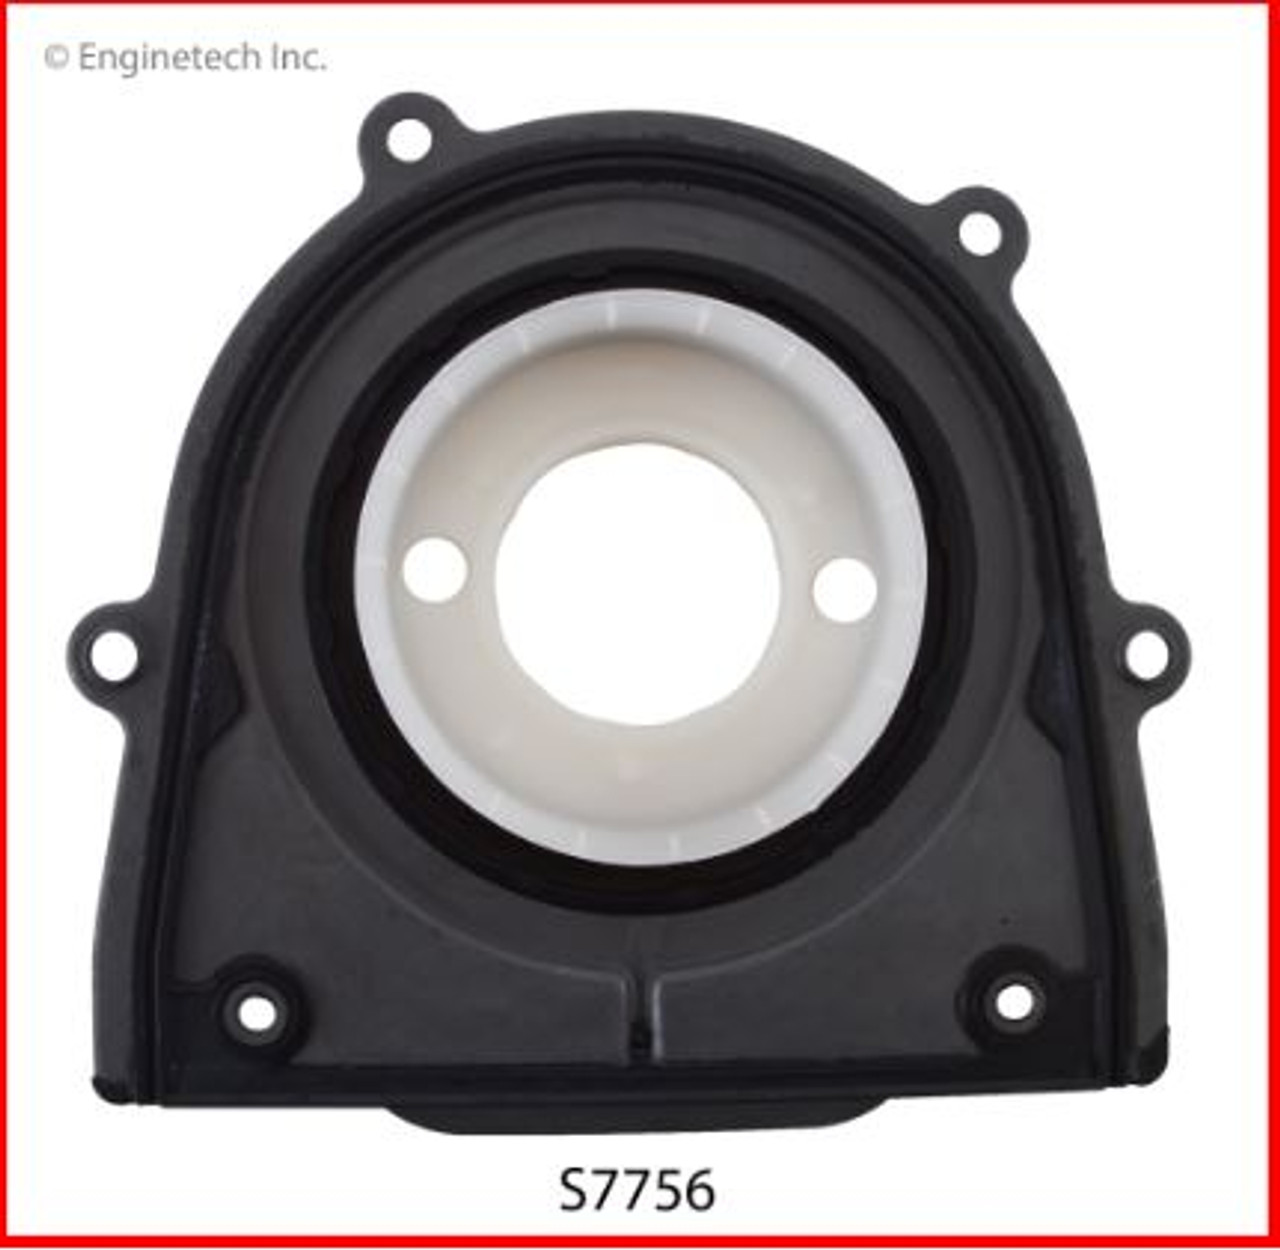 Crankshaft Seal - 2011 Mazda Tribute 2.5L (S7756.K155)